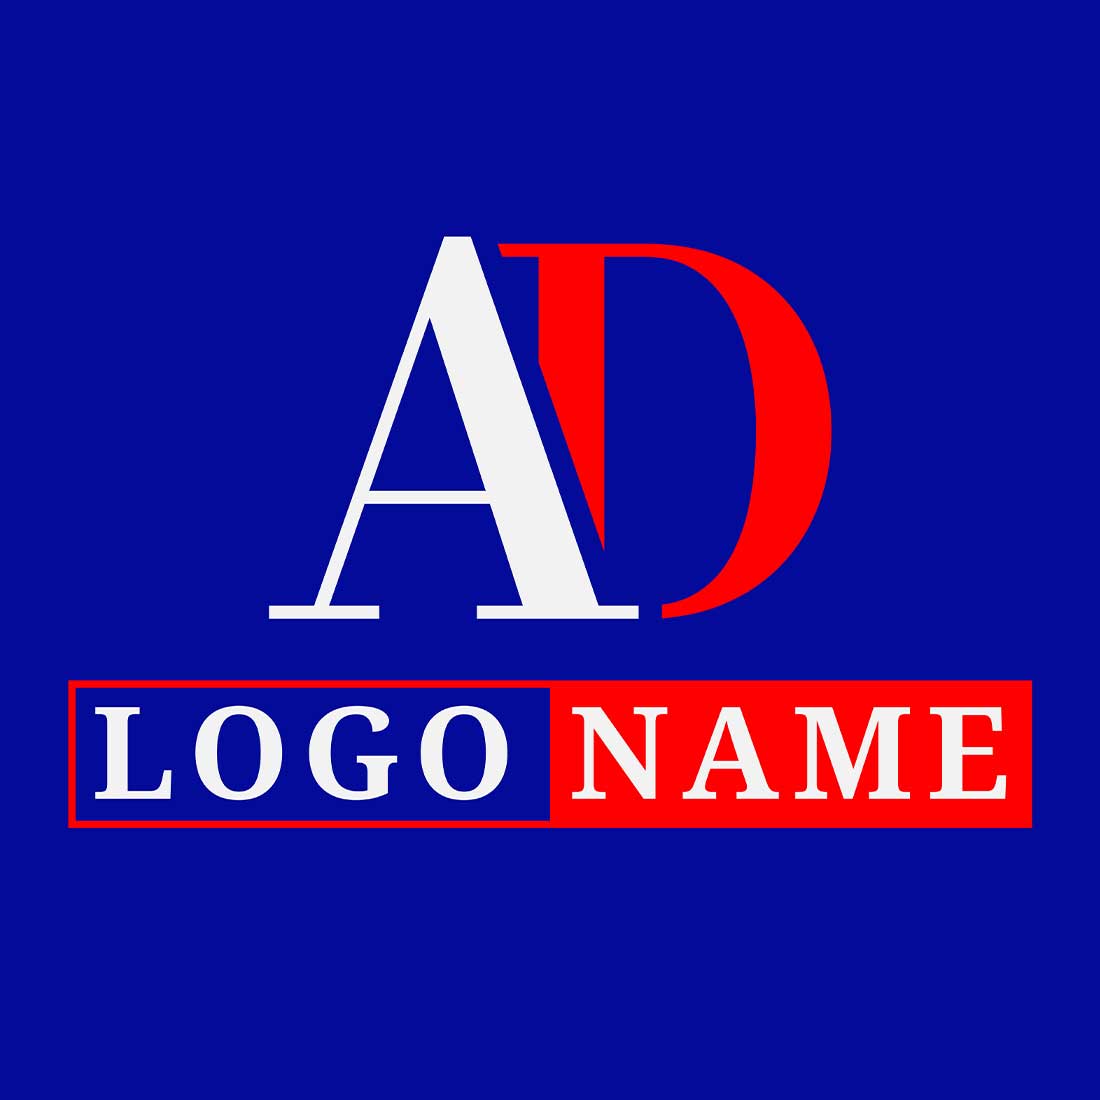 ad logo design004 122